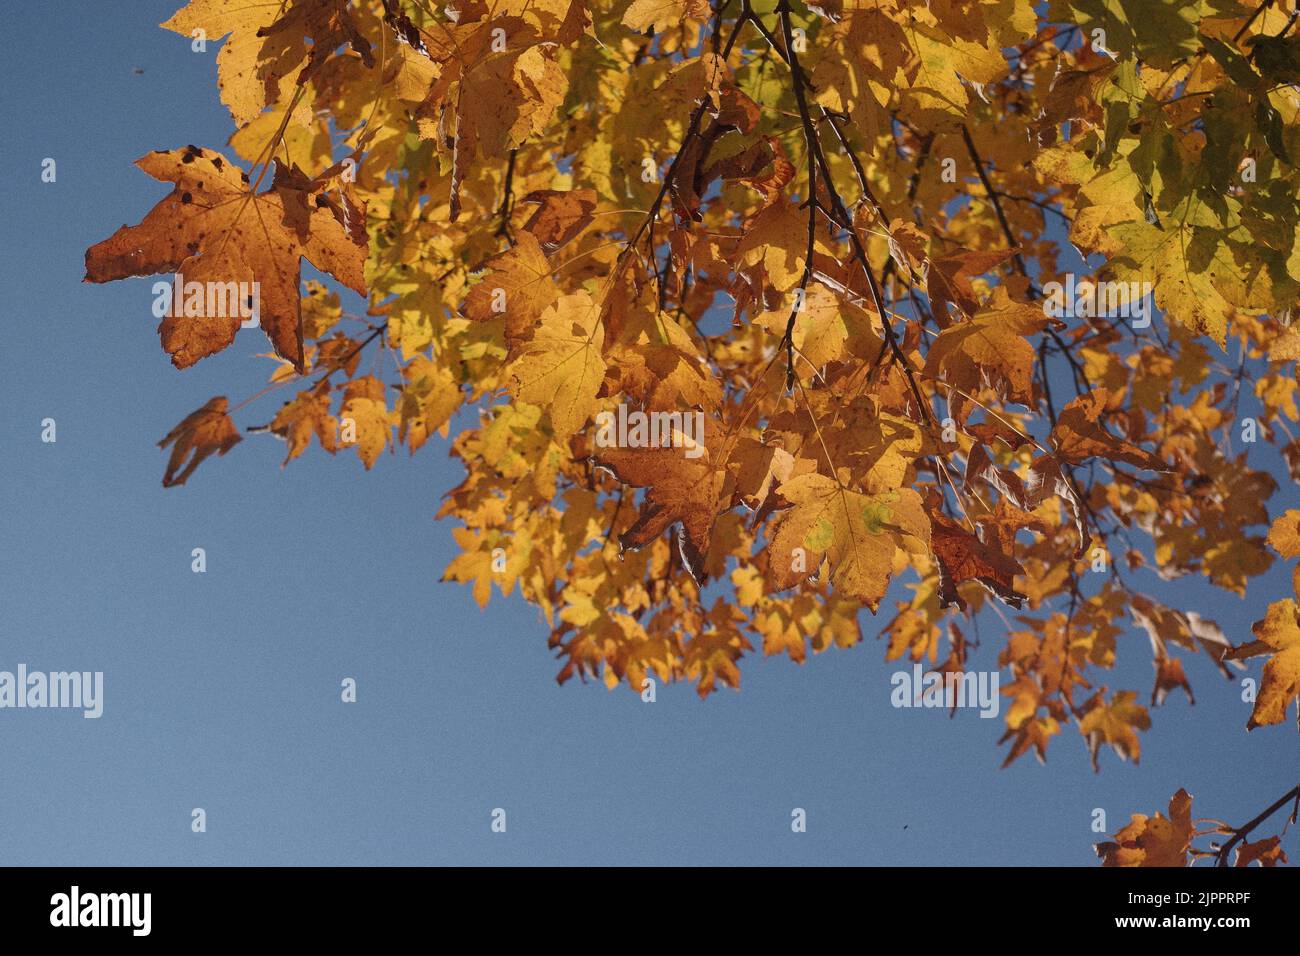 perspectiva de las hojas de otoño Foto de stock